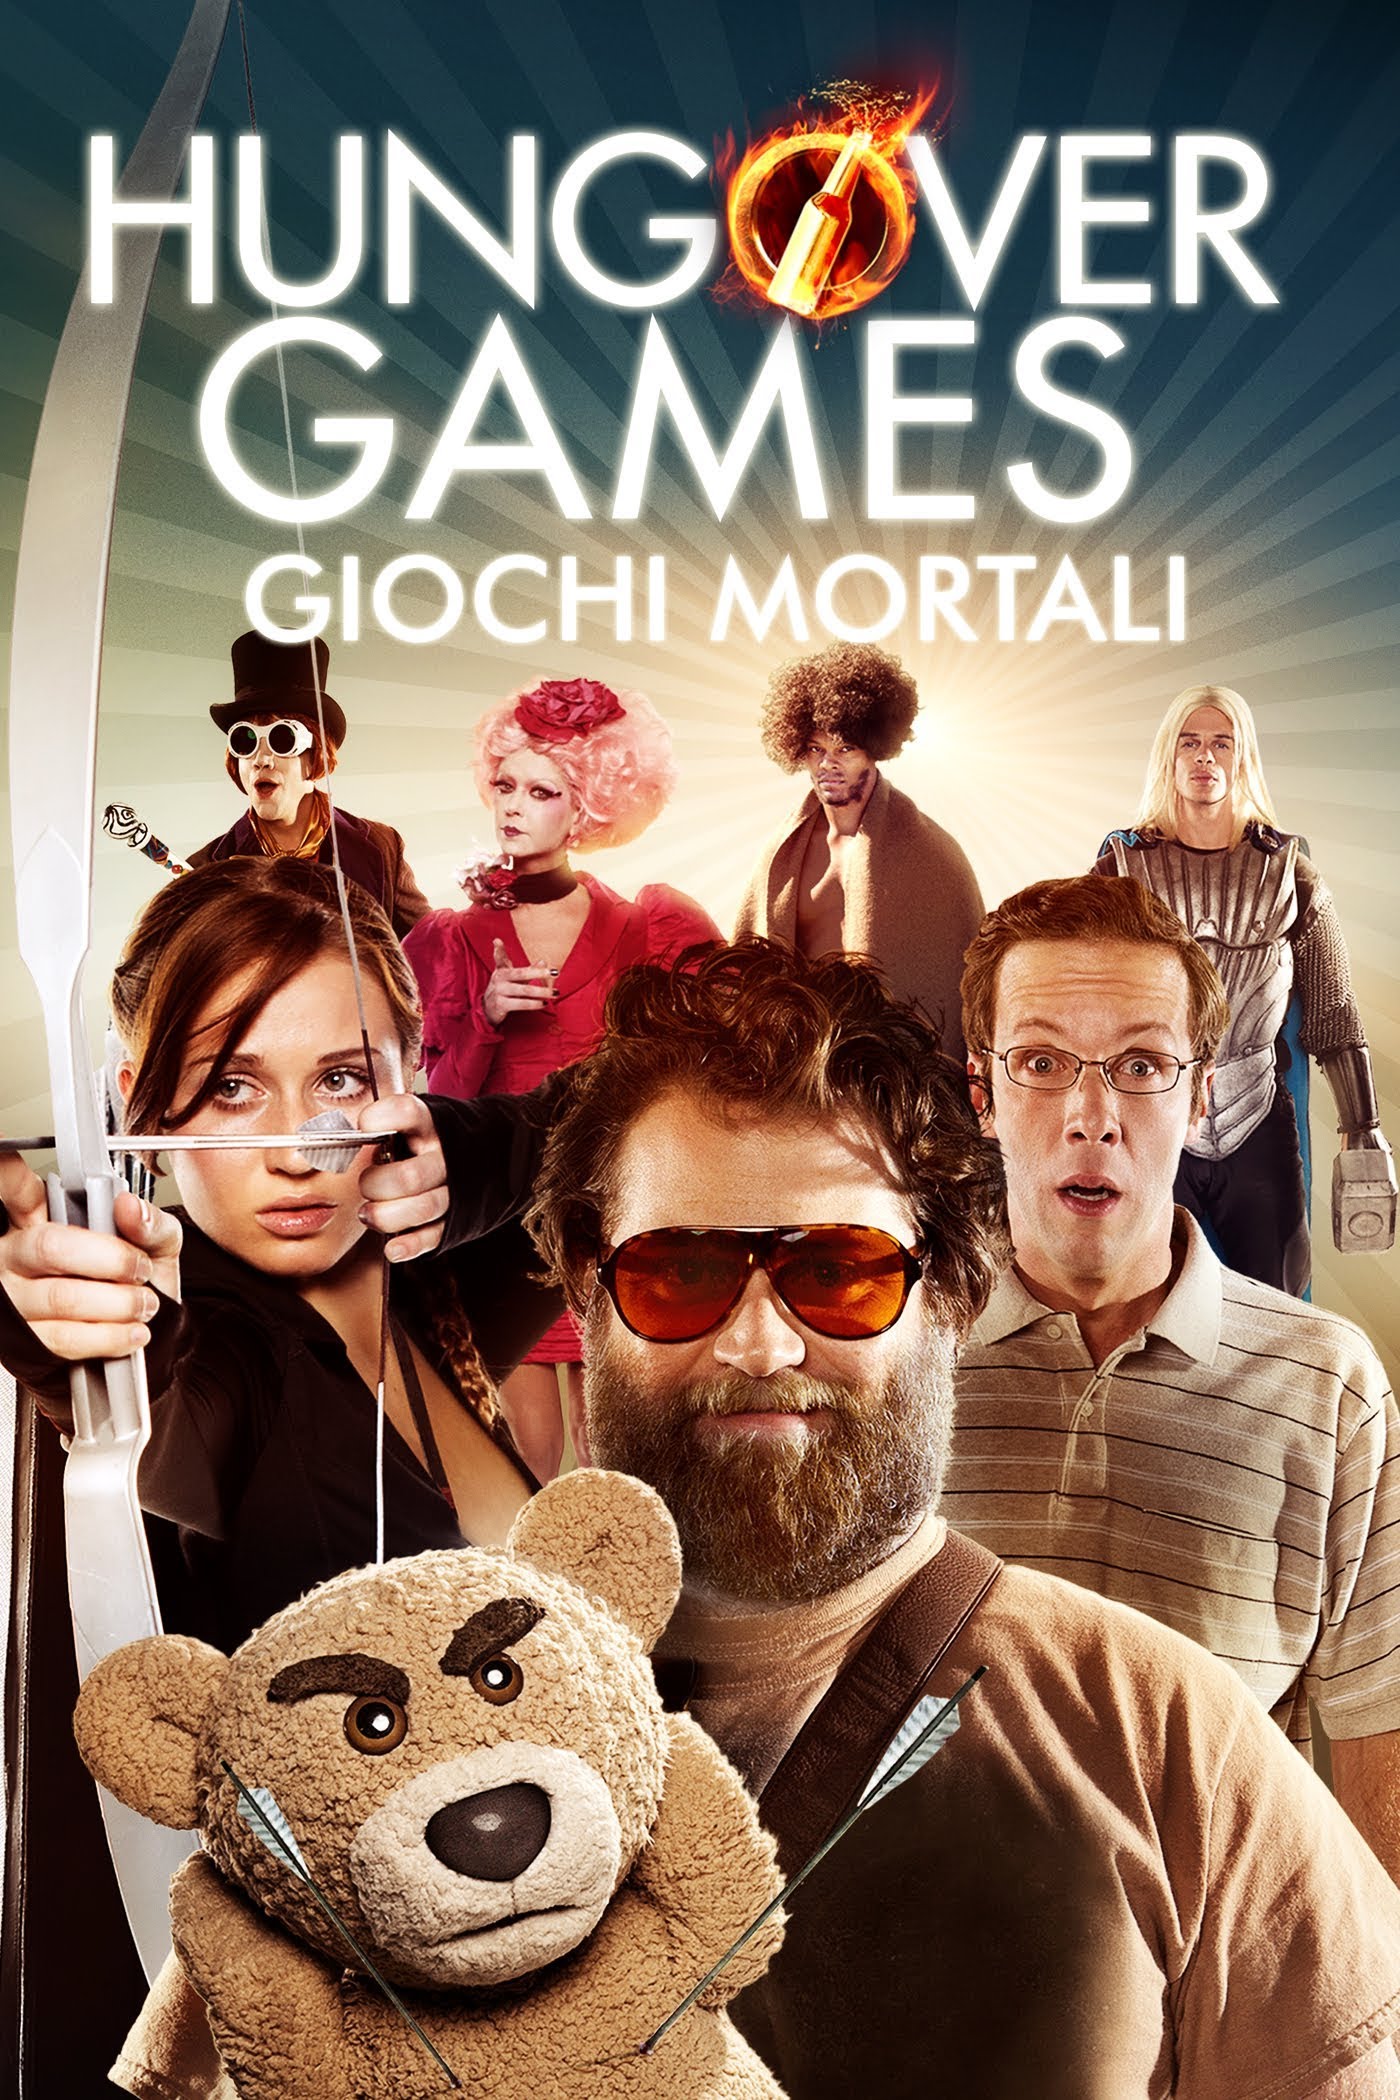 Hungover Games – Giochi Mortali [HD] (2014)